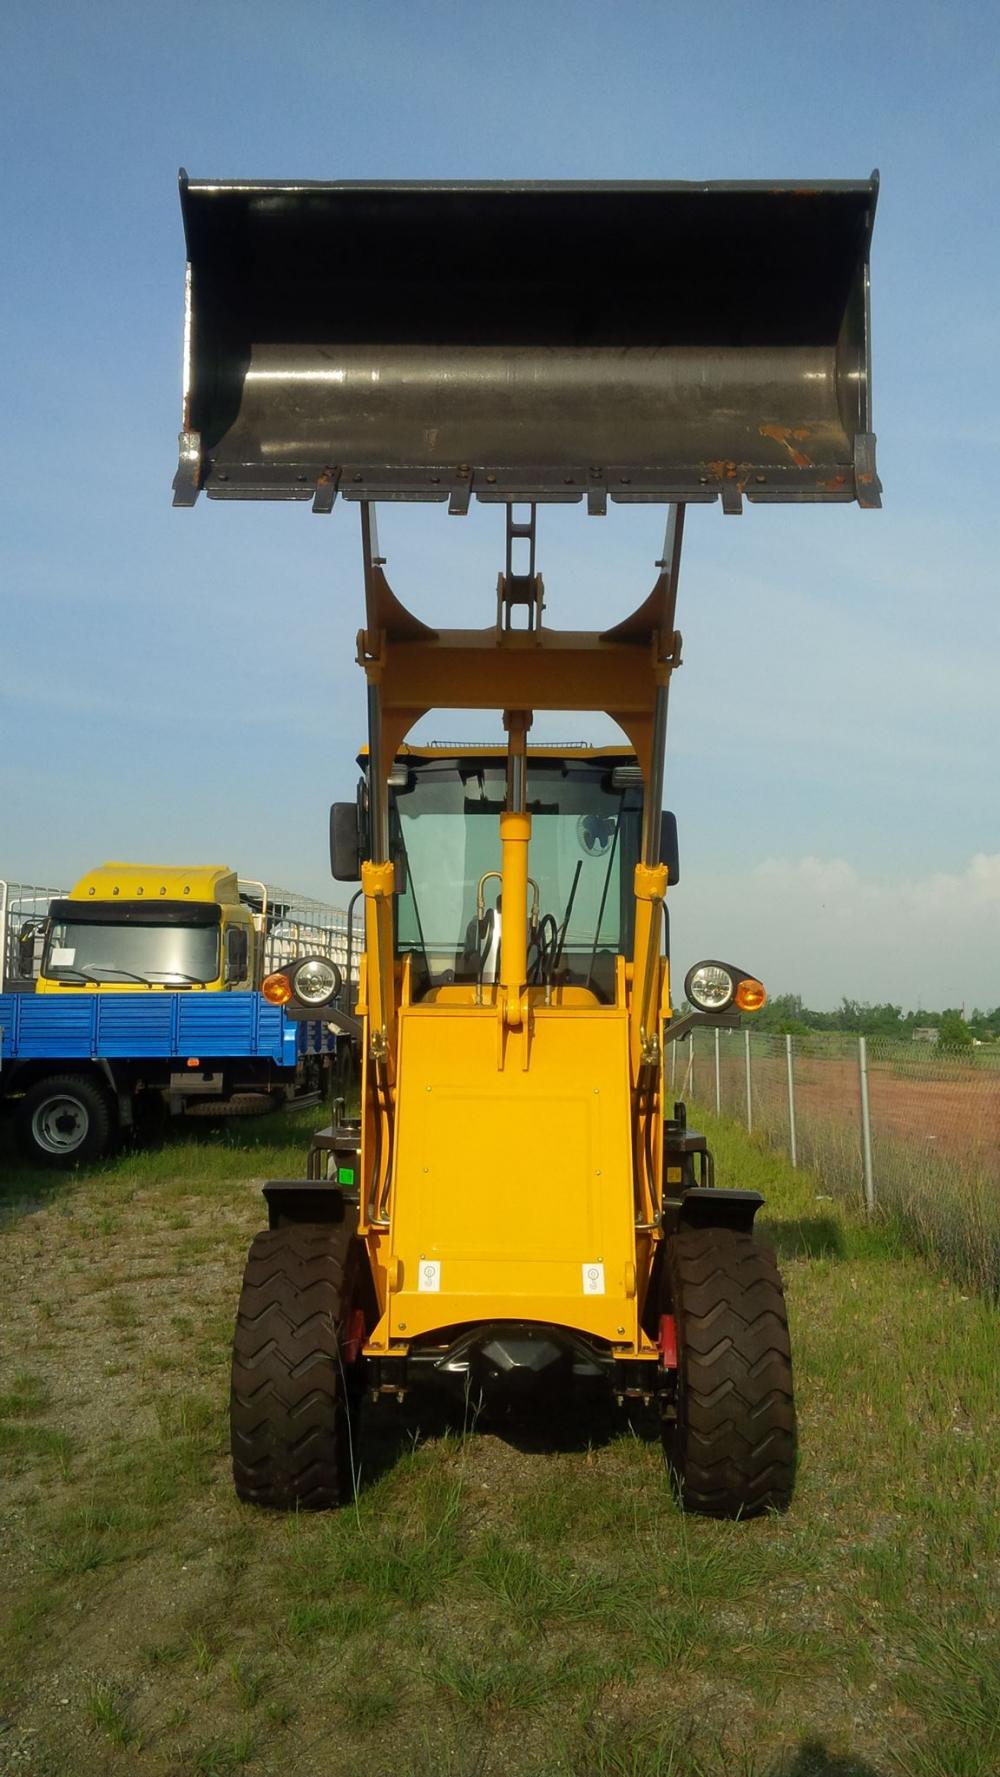 Xe tải 500kg - dưới 1 tấn 2018 - Bán và cho thuê máy xúc lật khu vực miền trung Quảng Nam, Đà Nẵng